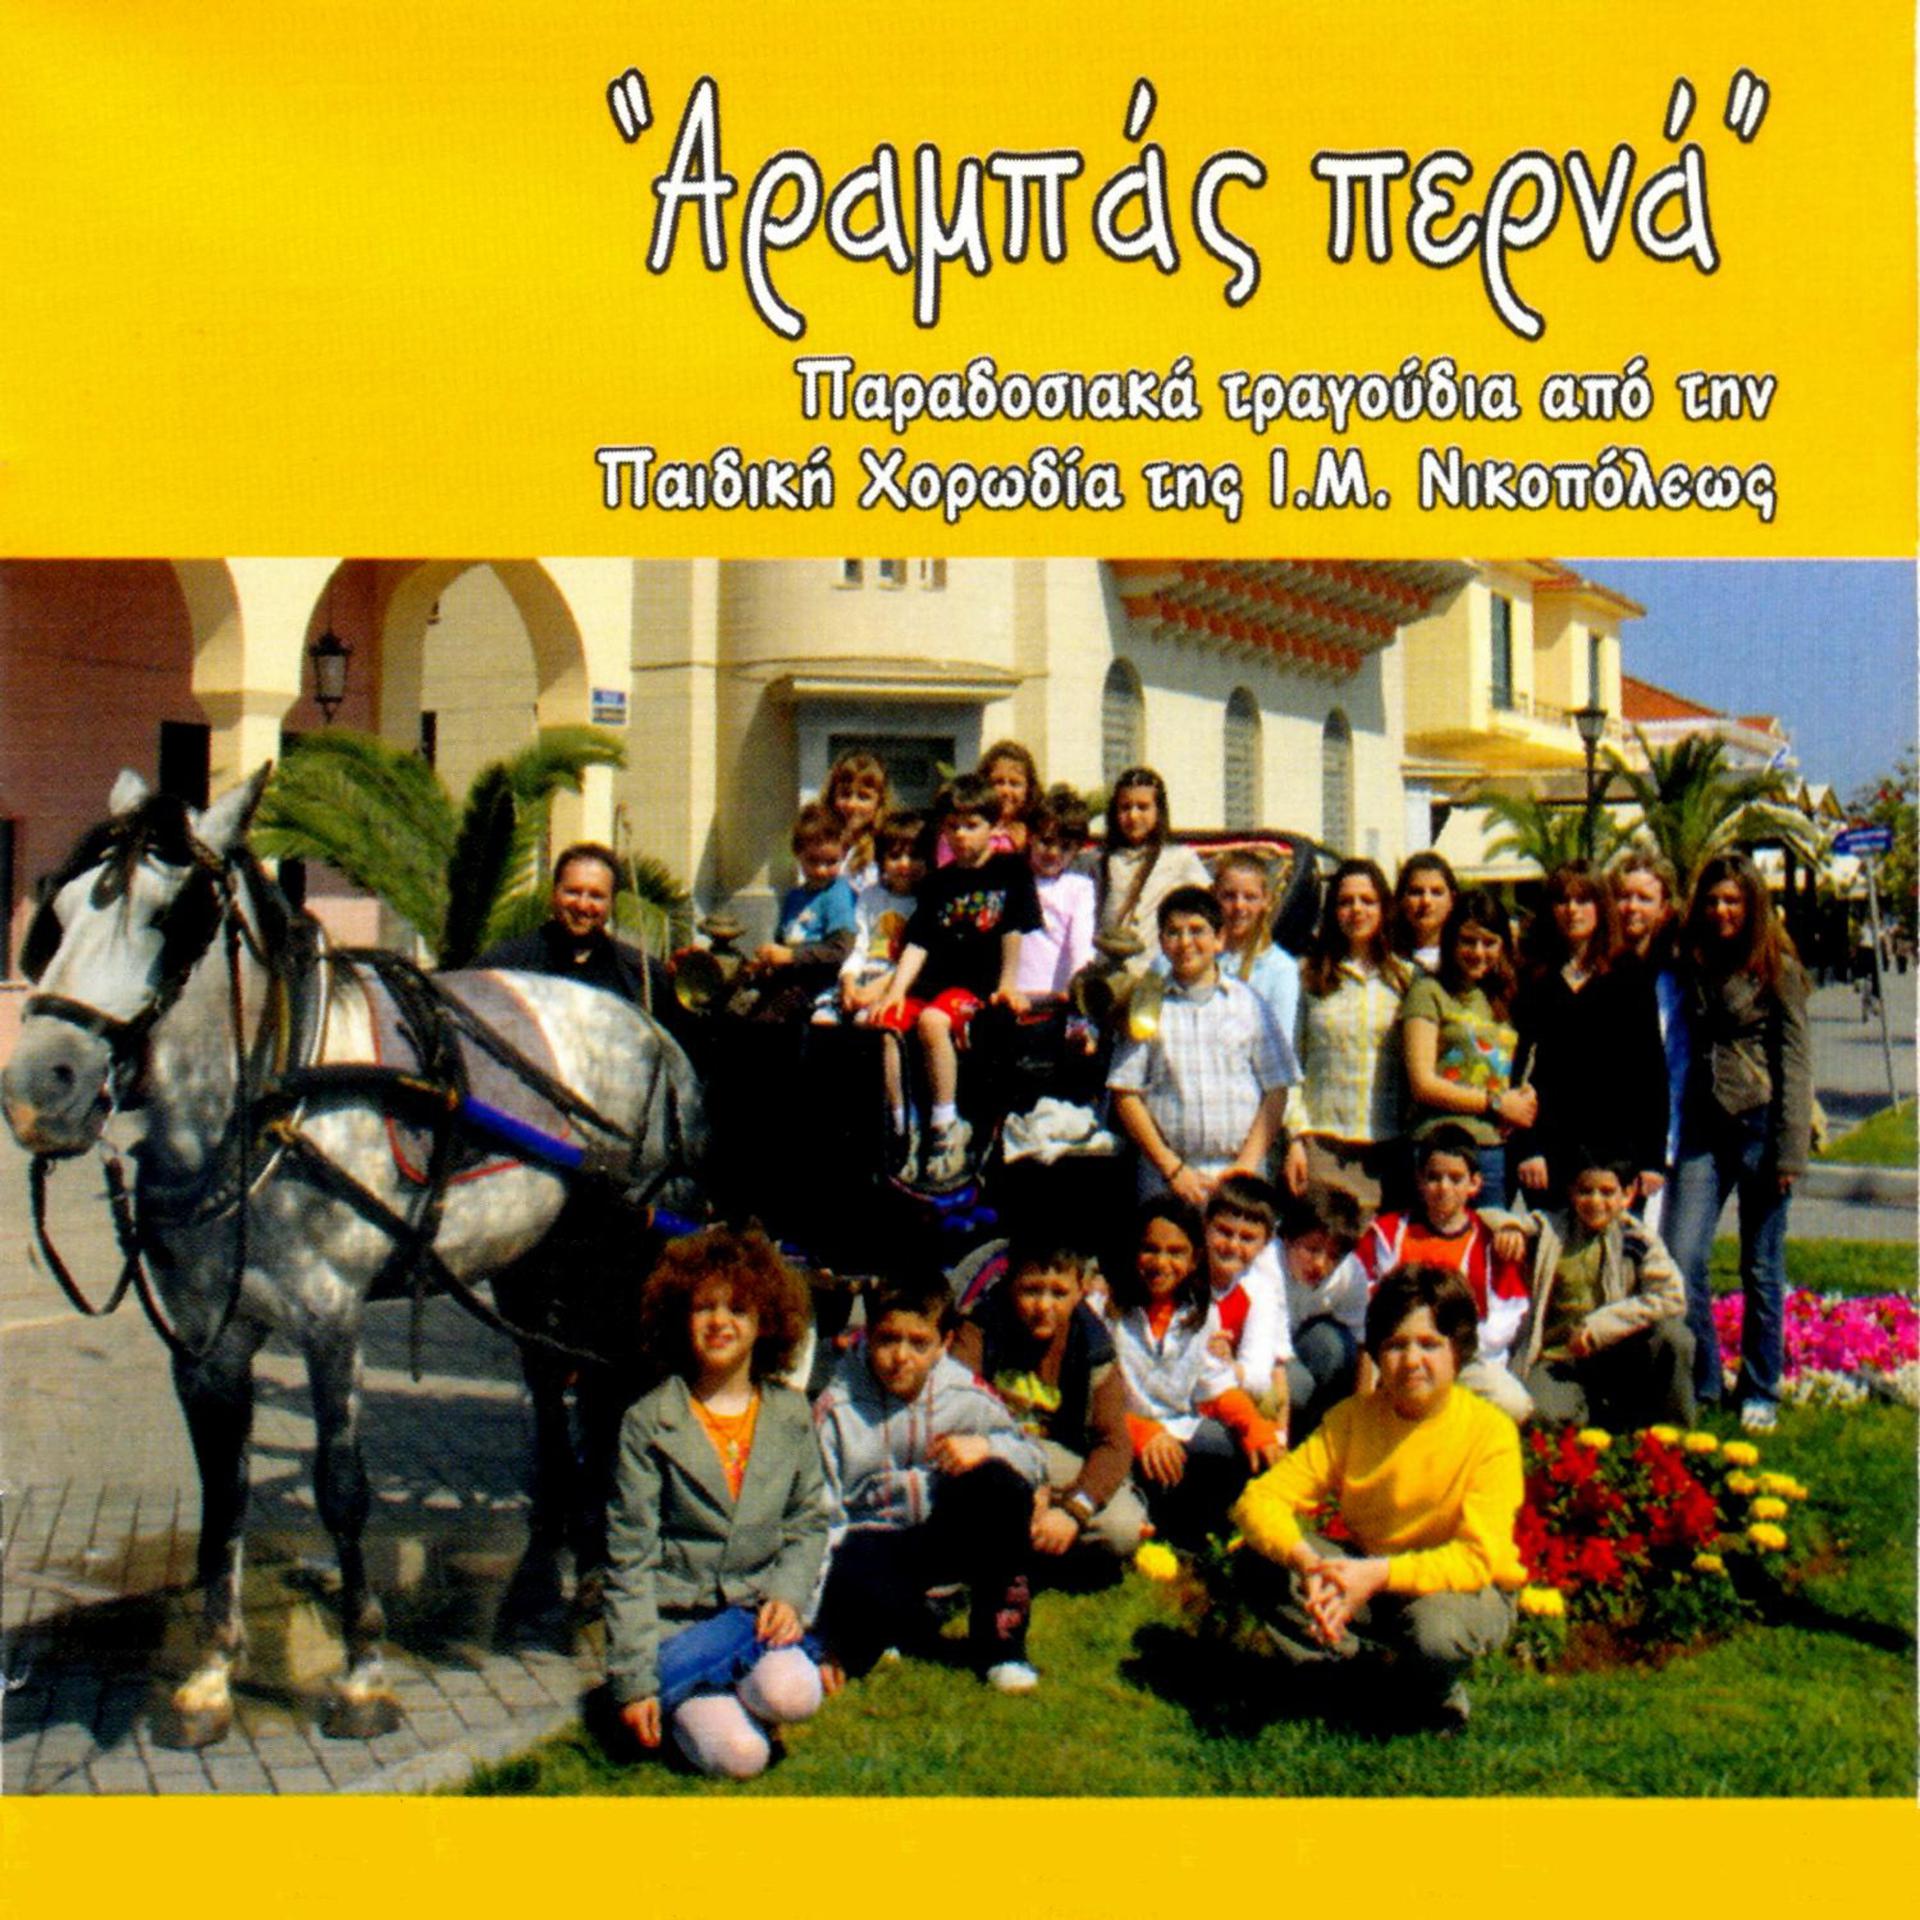 Постер к треку Thodoris Georgopoulos, Mihalis Zampas, Children's Chorus - Egglezitsa, Asia minor